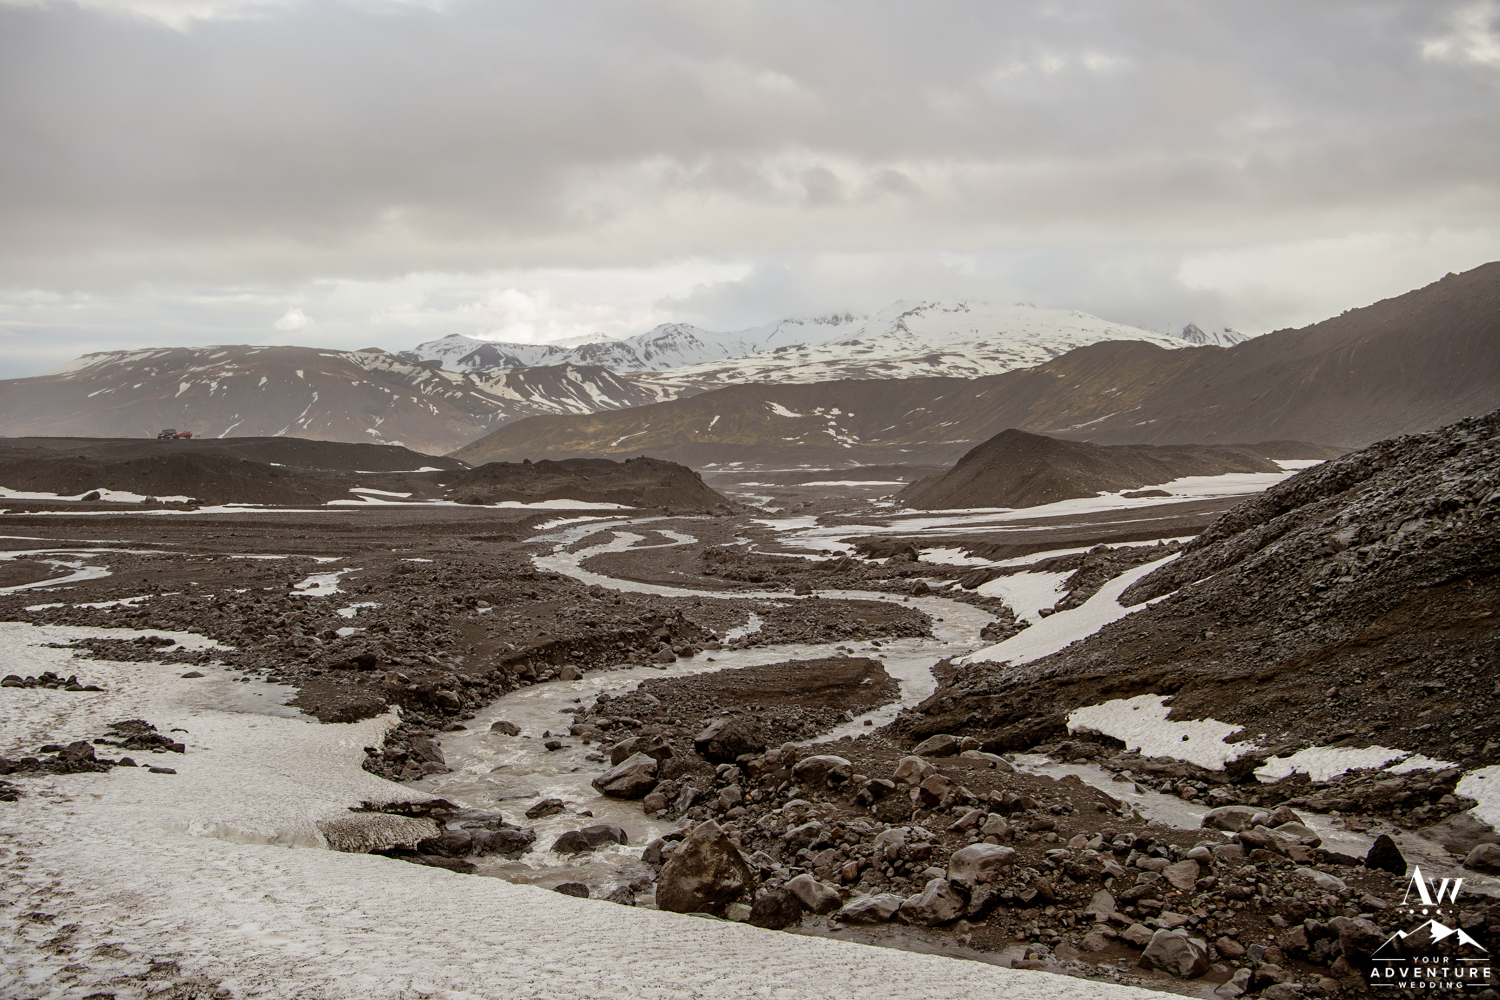 Overview of Thorsmork Iceland Glacier Outlet